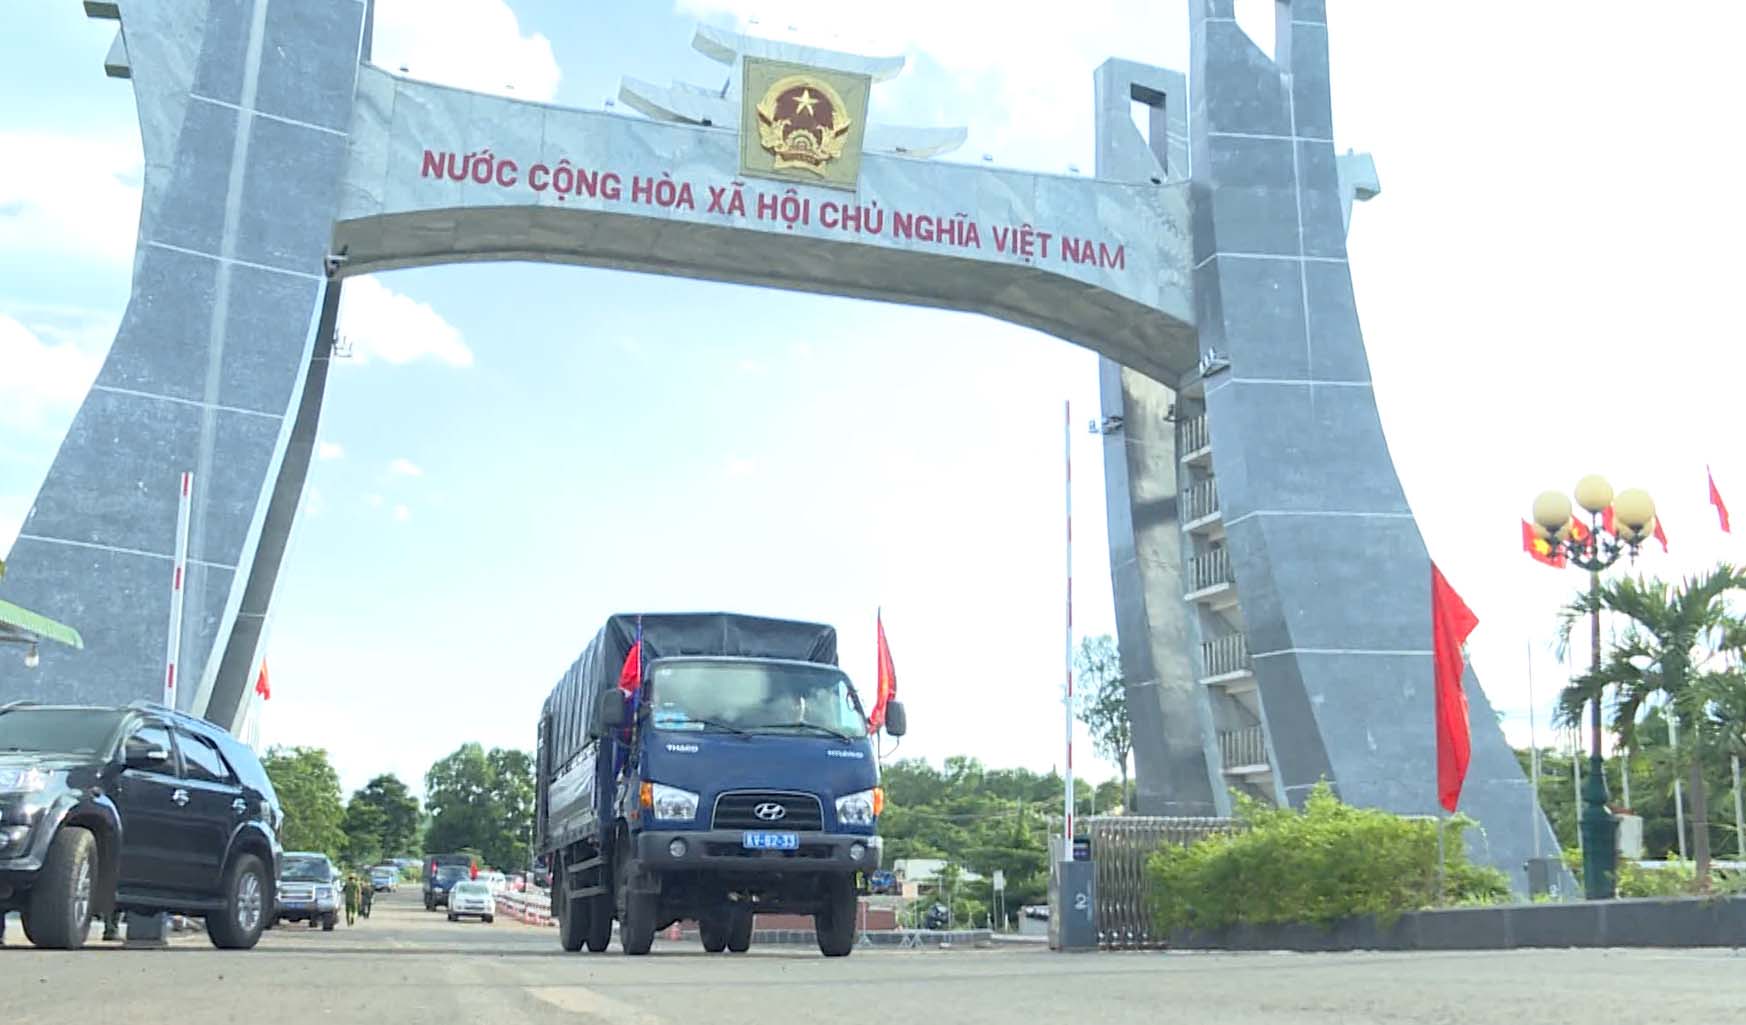 Đoàn xe đưa 18 hài cốt liệt sĩ quân tình nguyện và chuyên gia Việt Nam đã về đến đất Mẹ